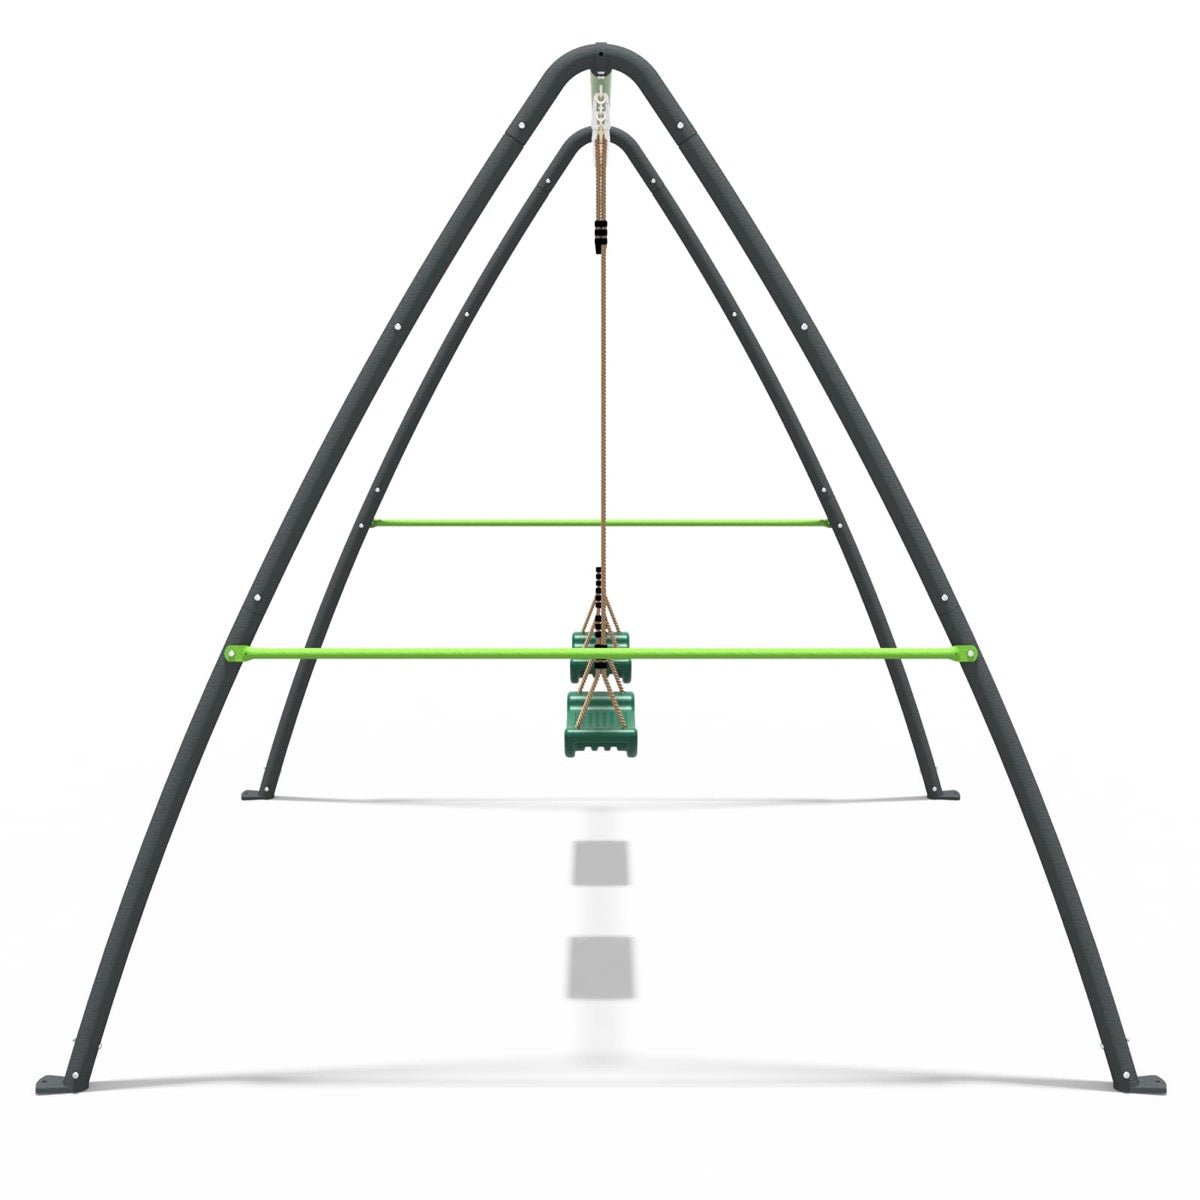 Rebo Steel Series Metal Swing Set - Double Swing Green